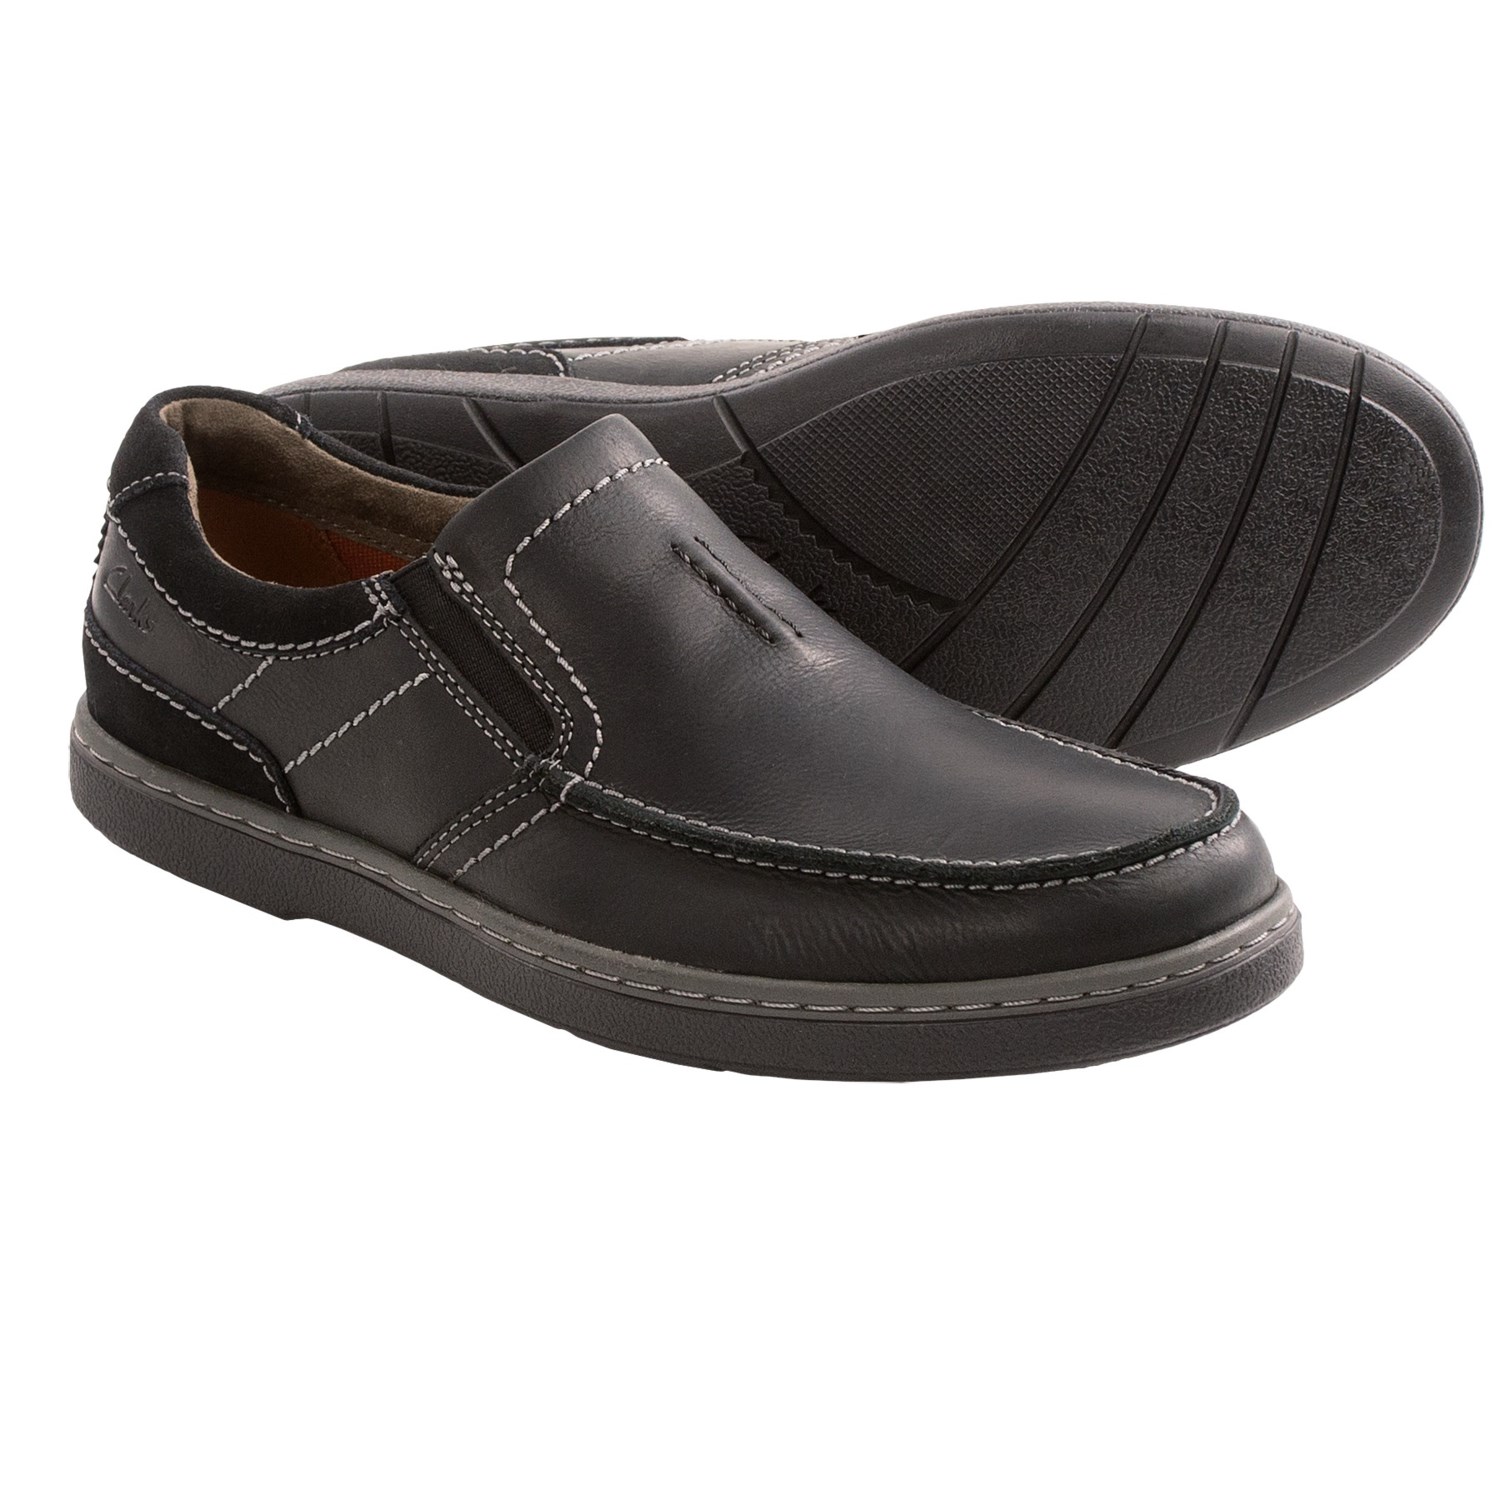 Clarks Salton Step Shoes (For Men) 8657P - Save 33%